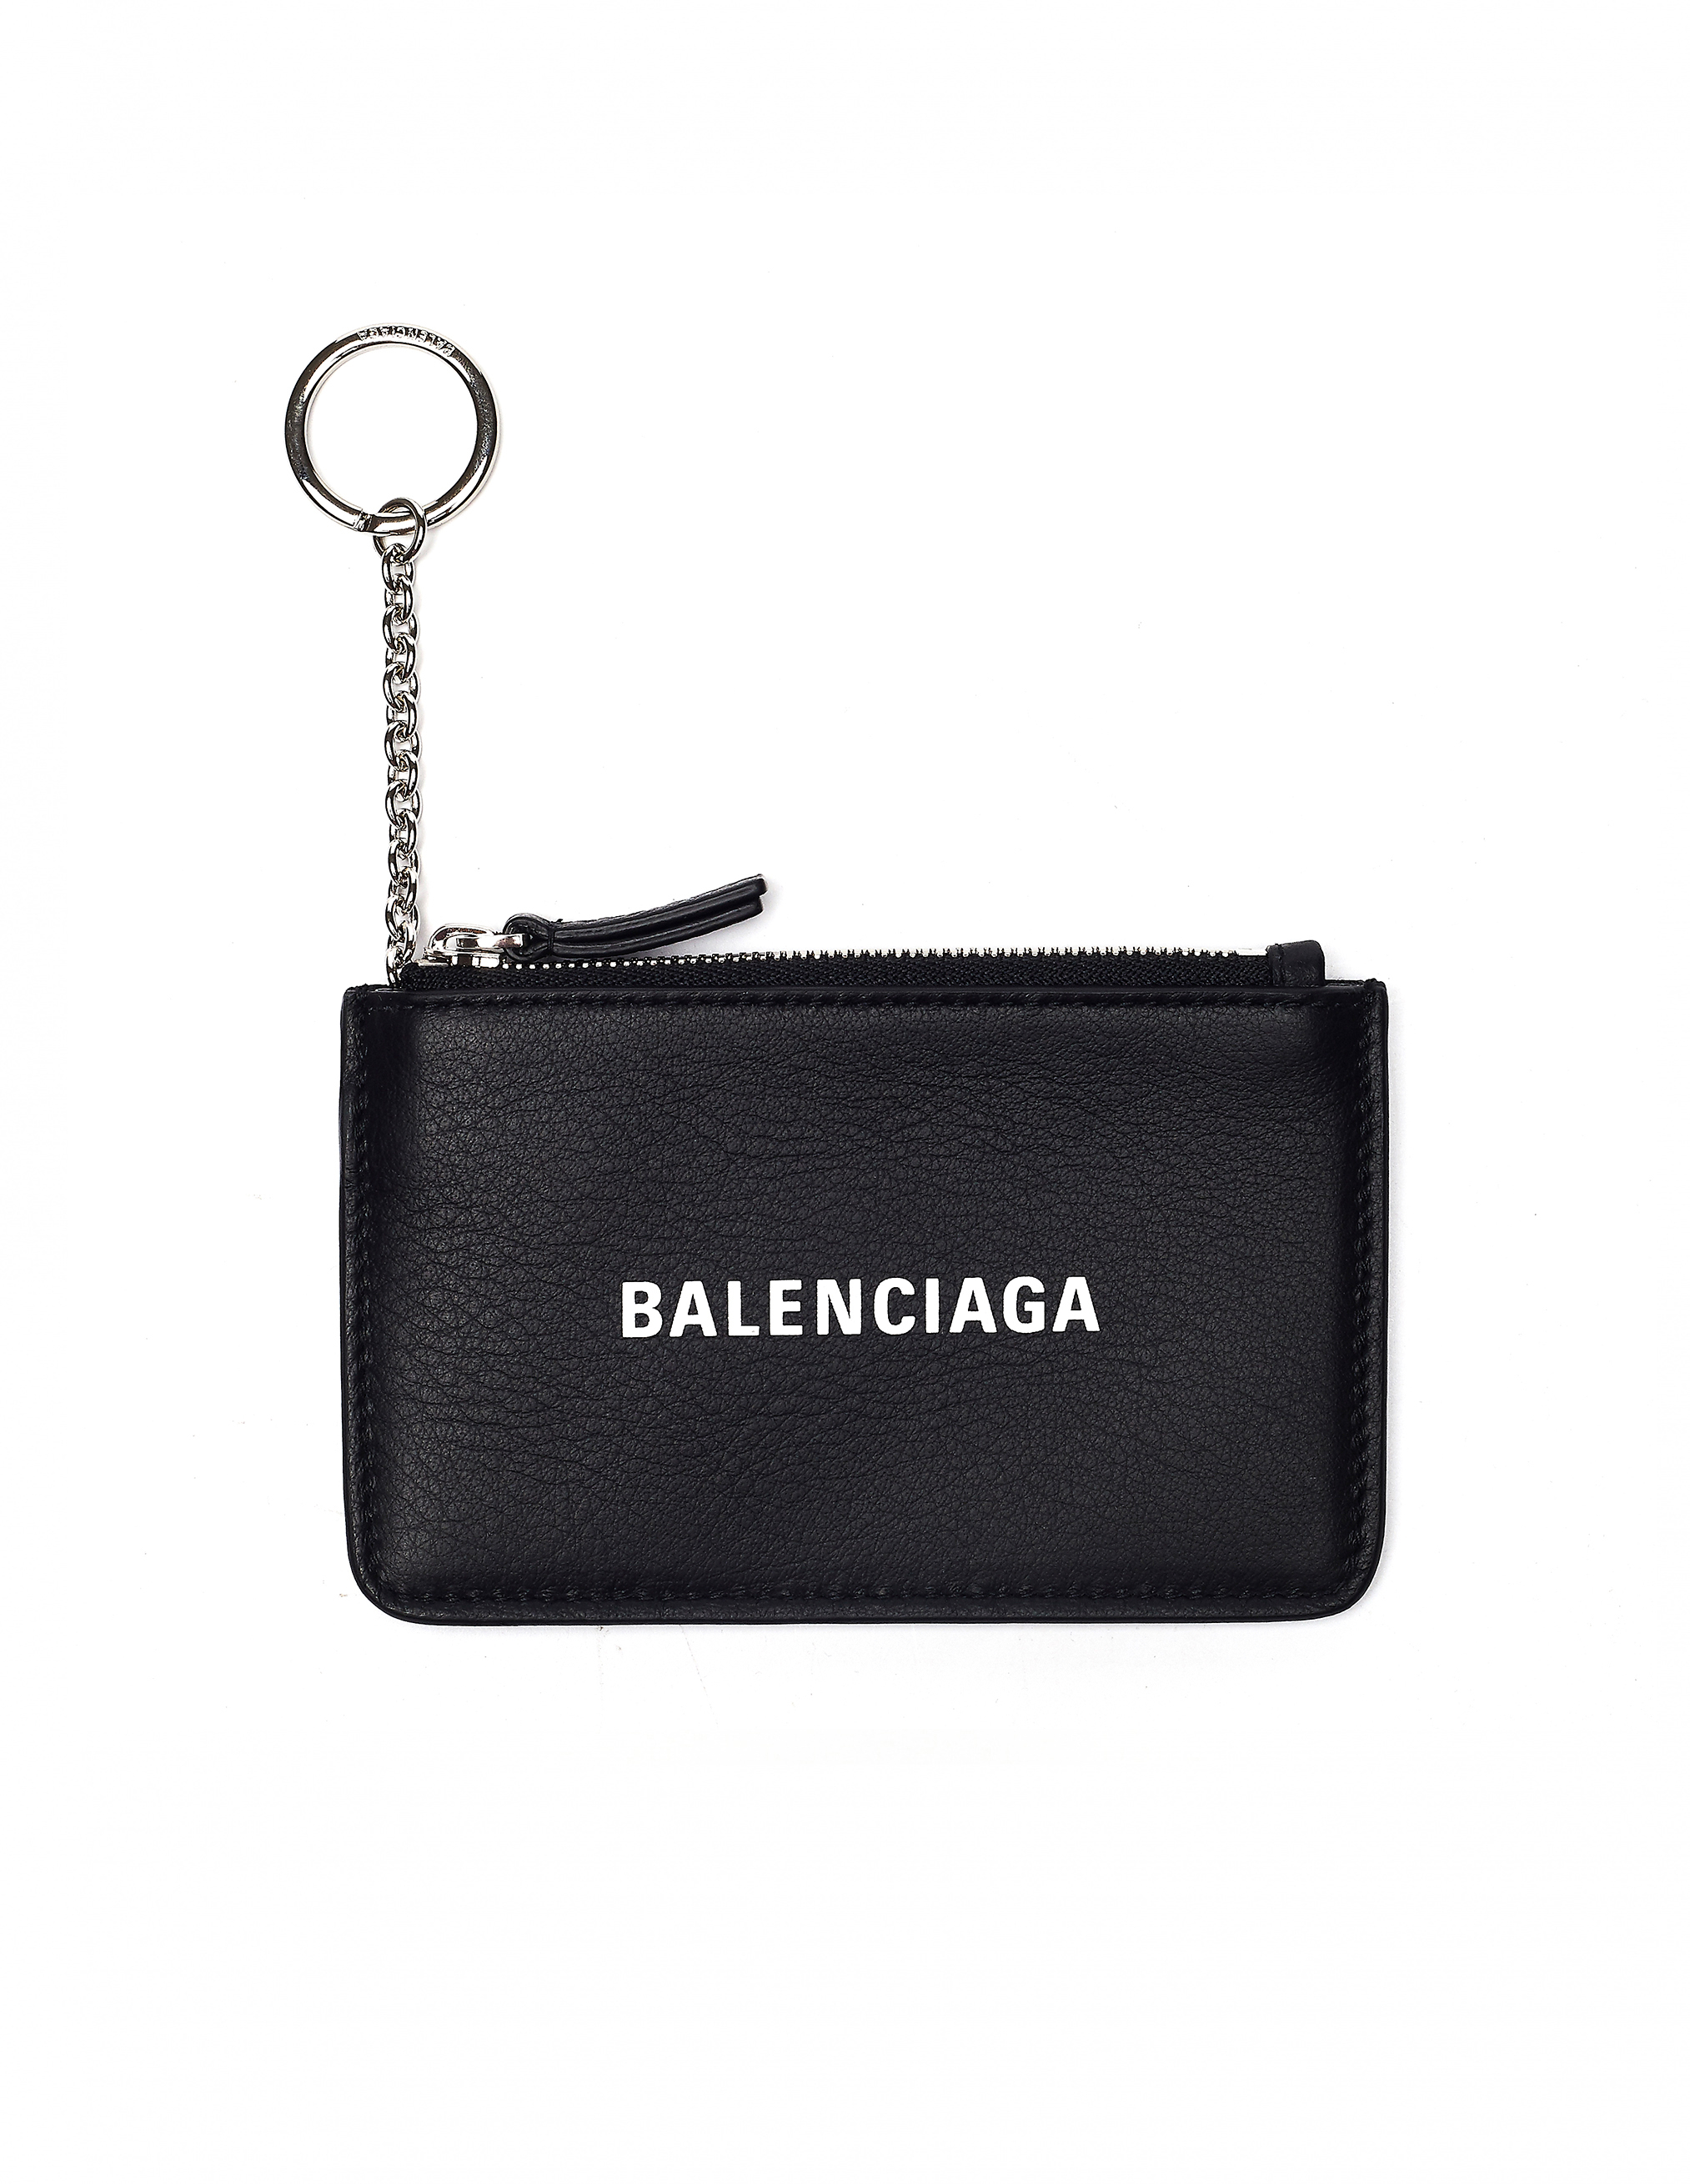 Balenciaga Everyday Key & Coin Purse In Black